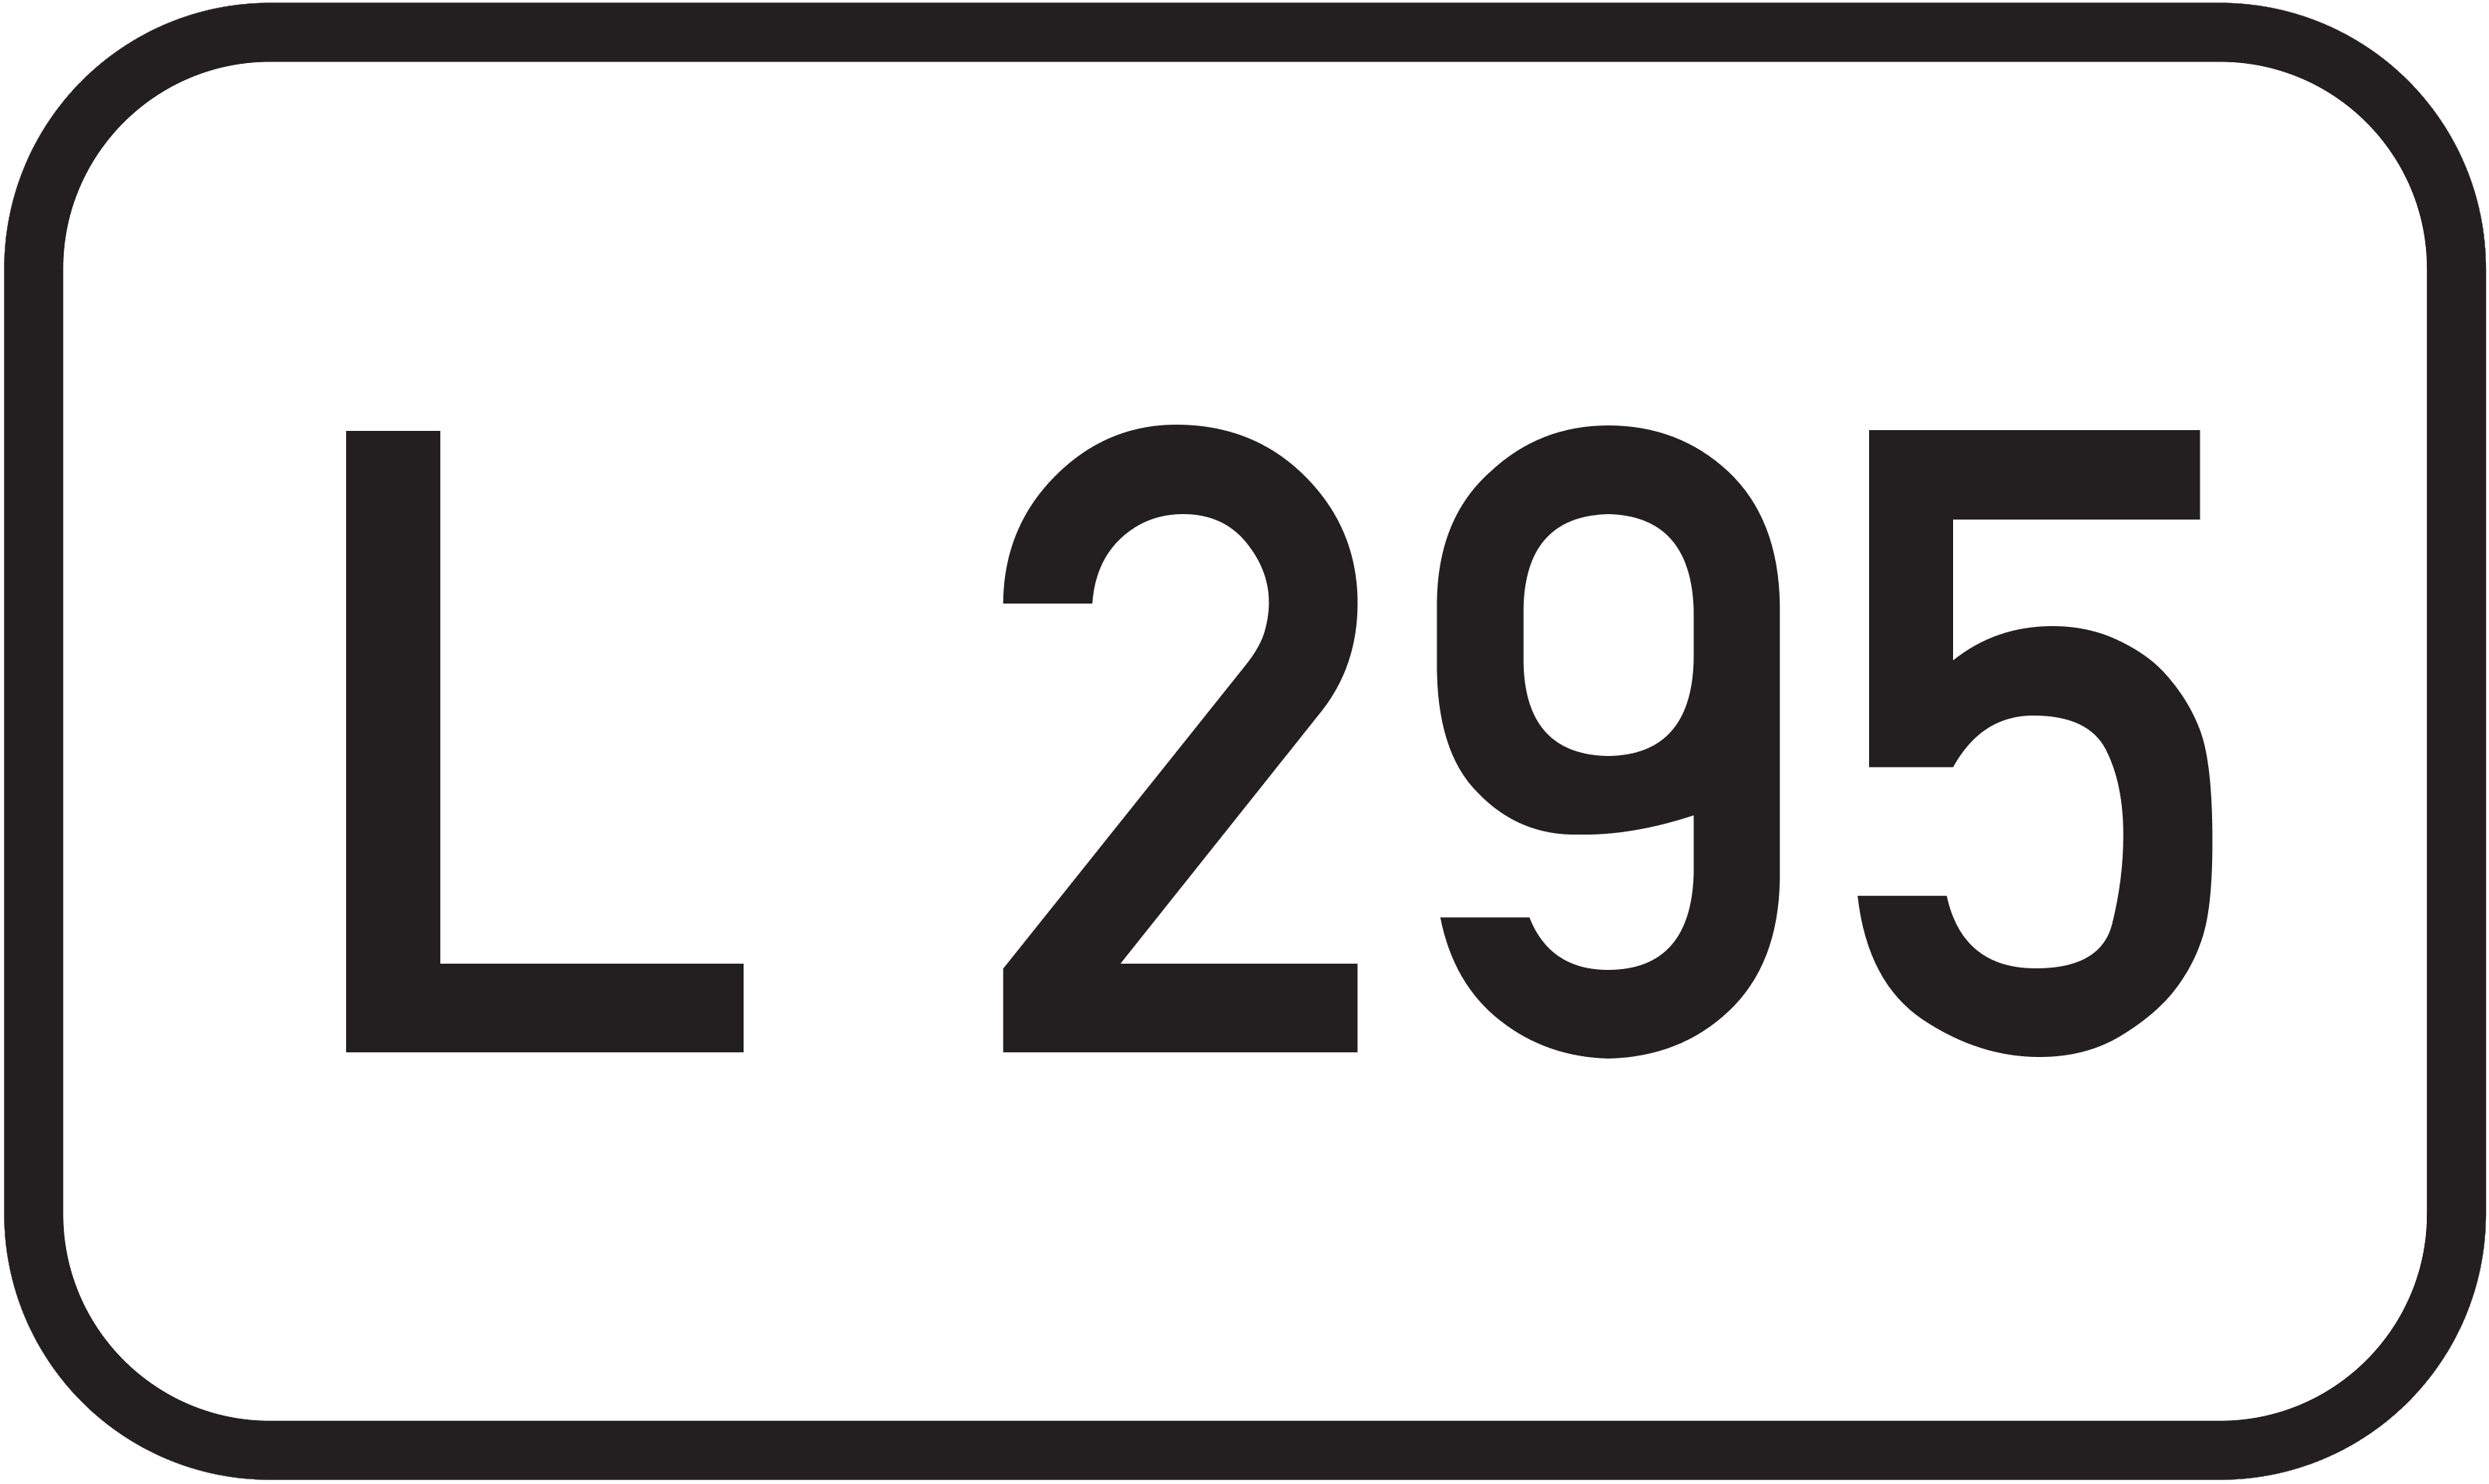 Landesstraße L 295